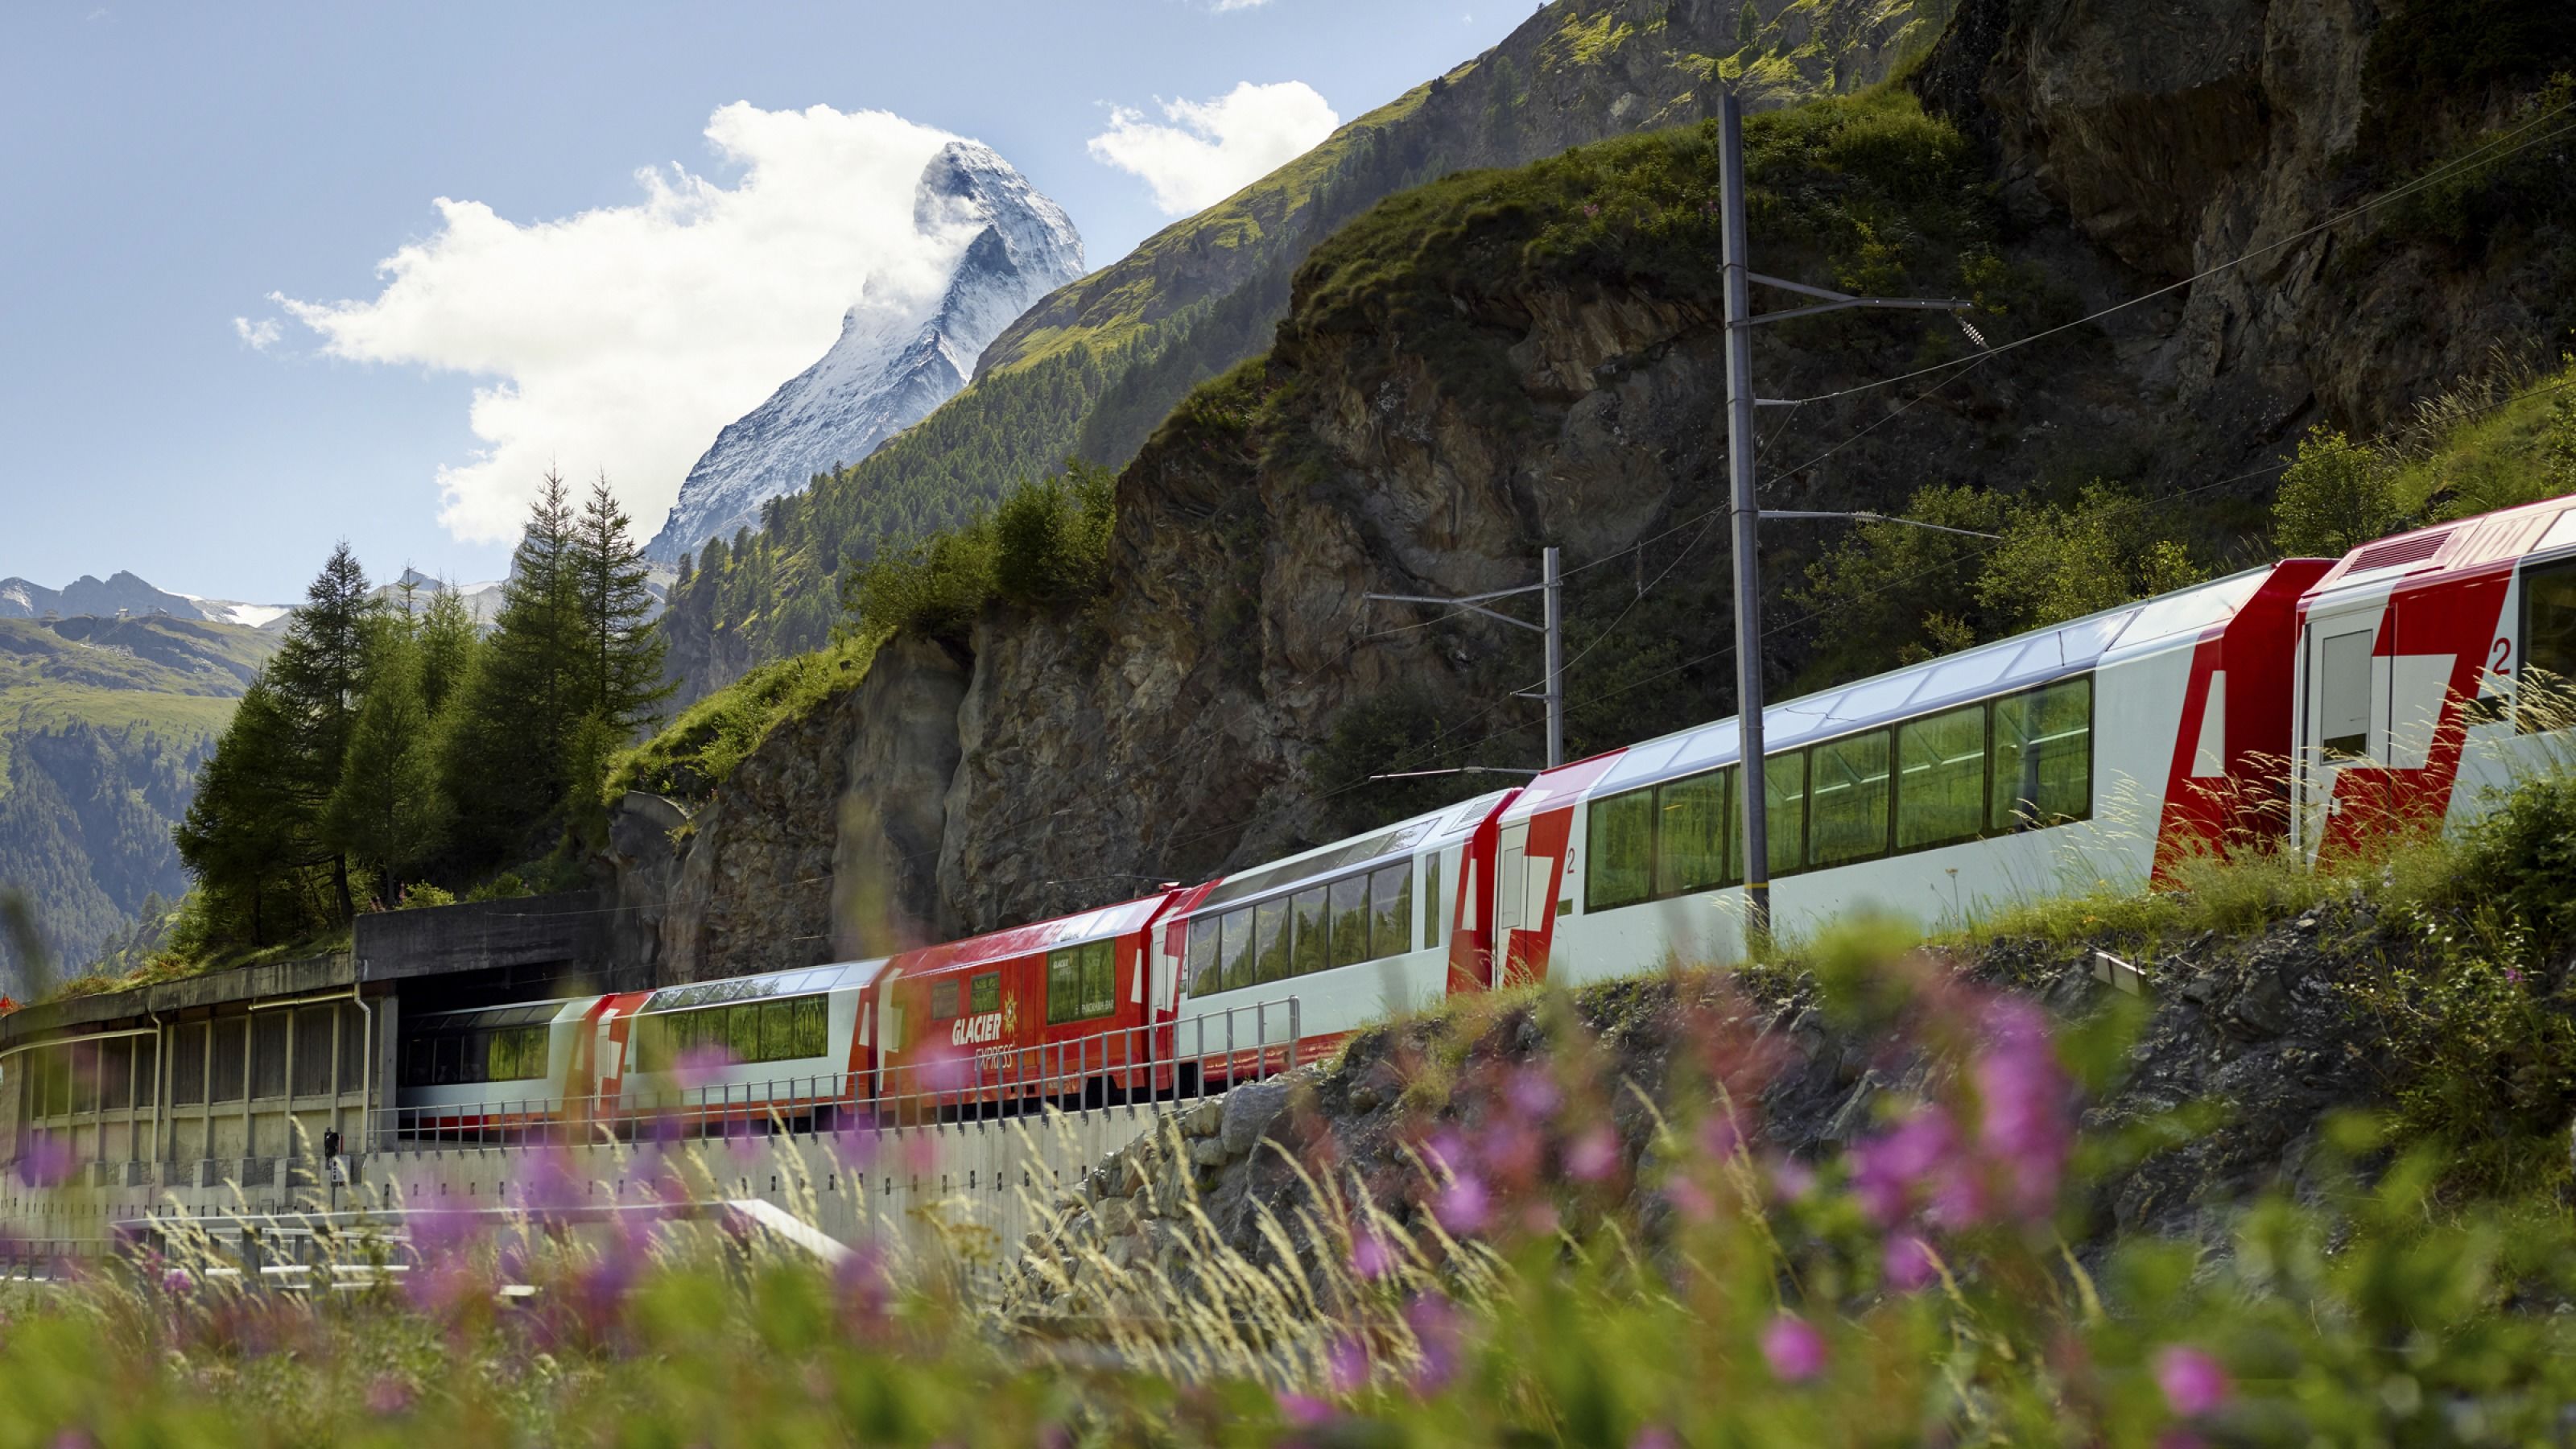 Жд тур на поезде. Ледниковый экспресс Швейцария. Швейцария поезд ледяной экспресс. Поезд Церматт Альпы. Поезд в Альпах Швейцария.